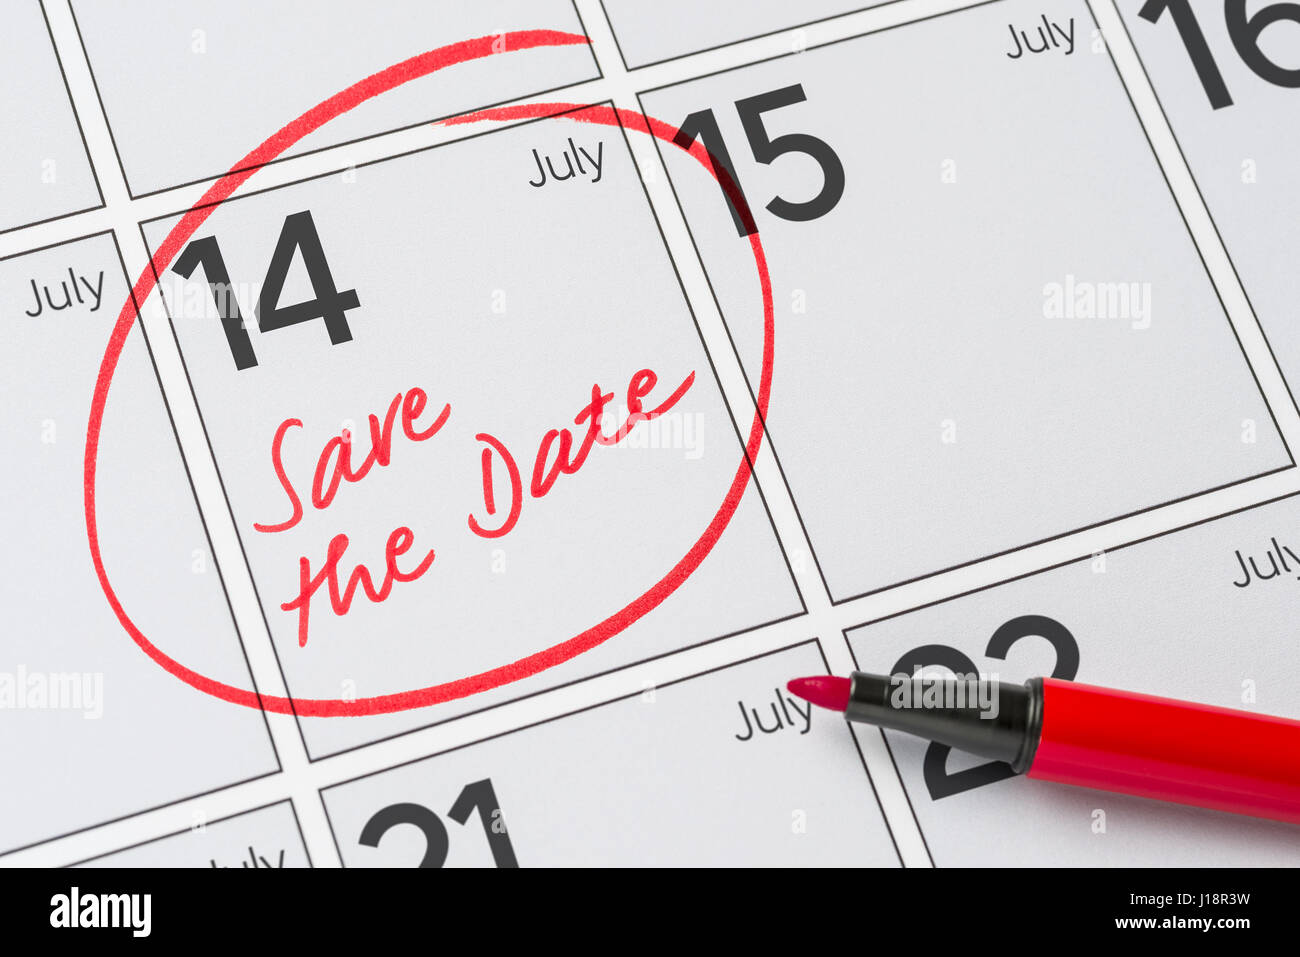 Enregistrer la date inscrite sur un calendrier - Juillet 14 Banque D'Images